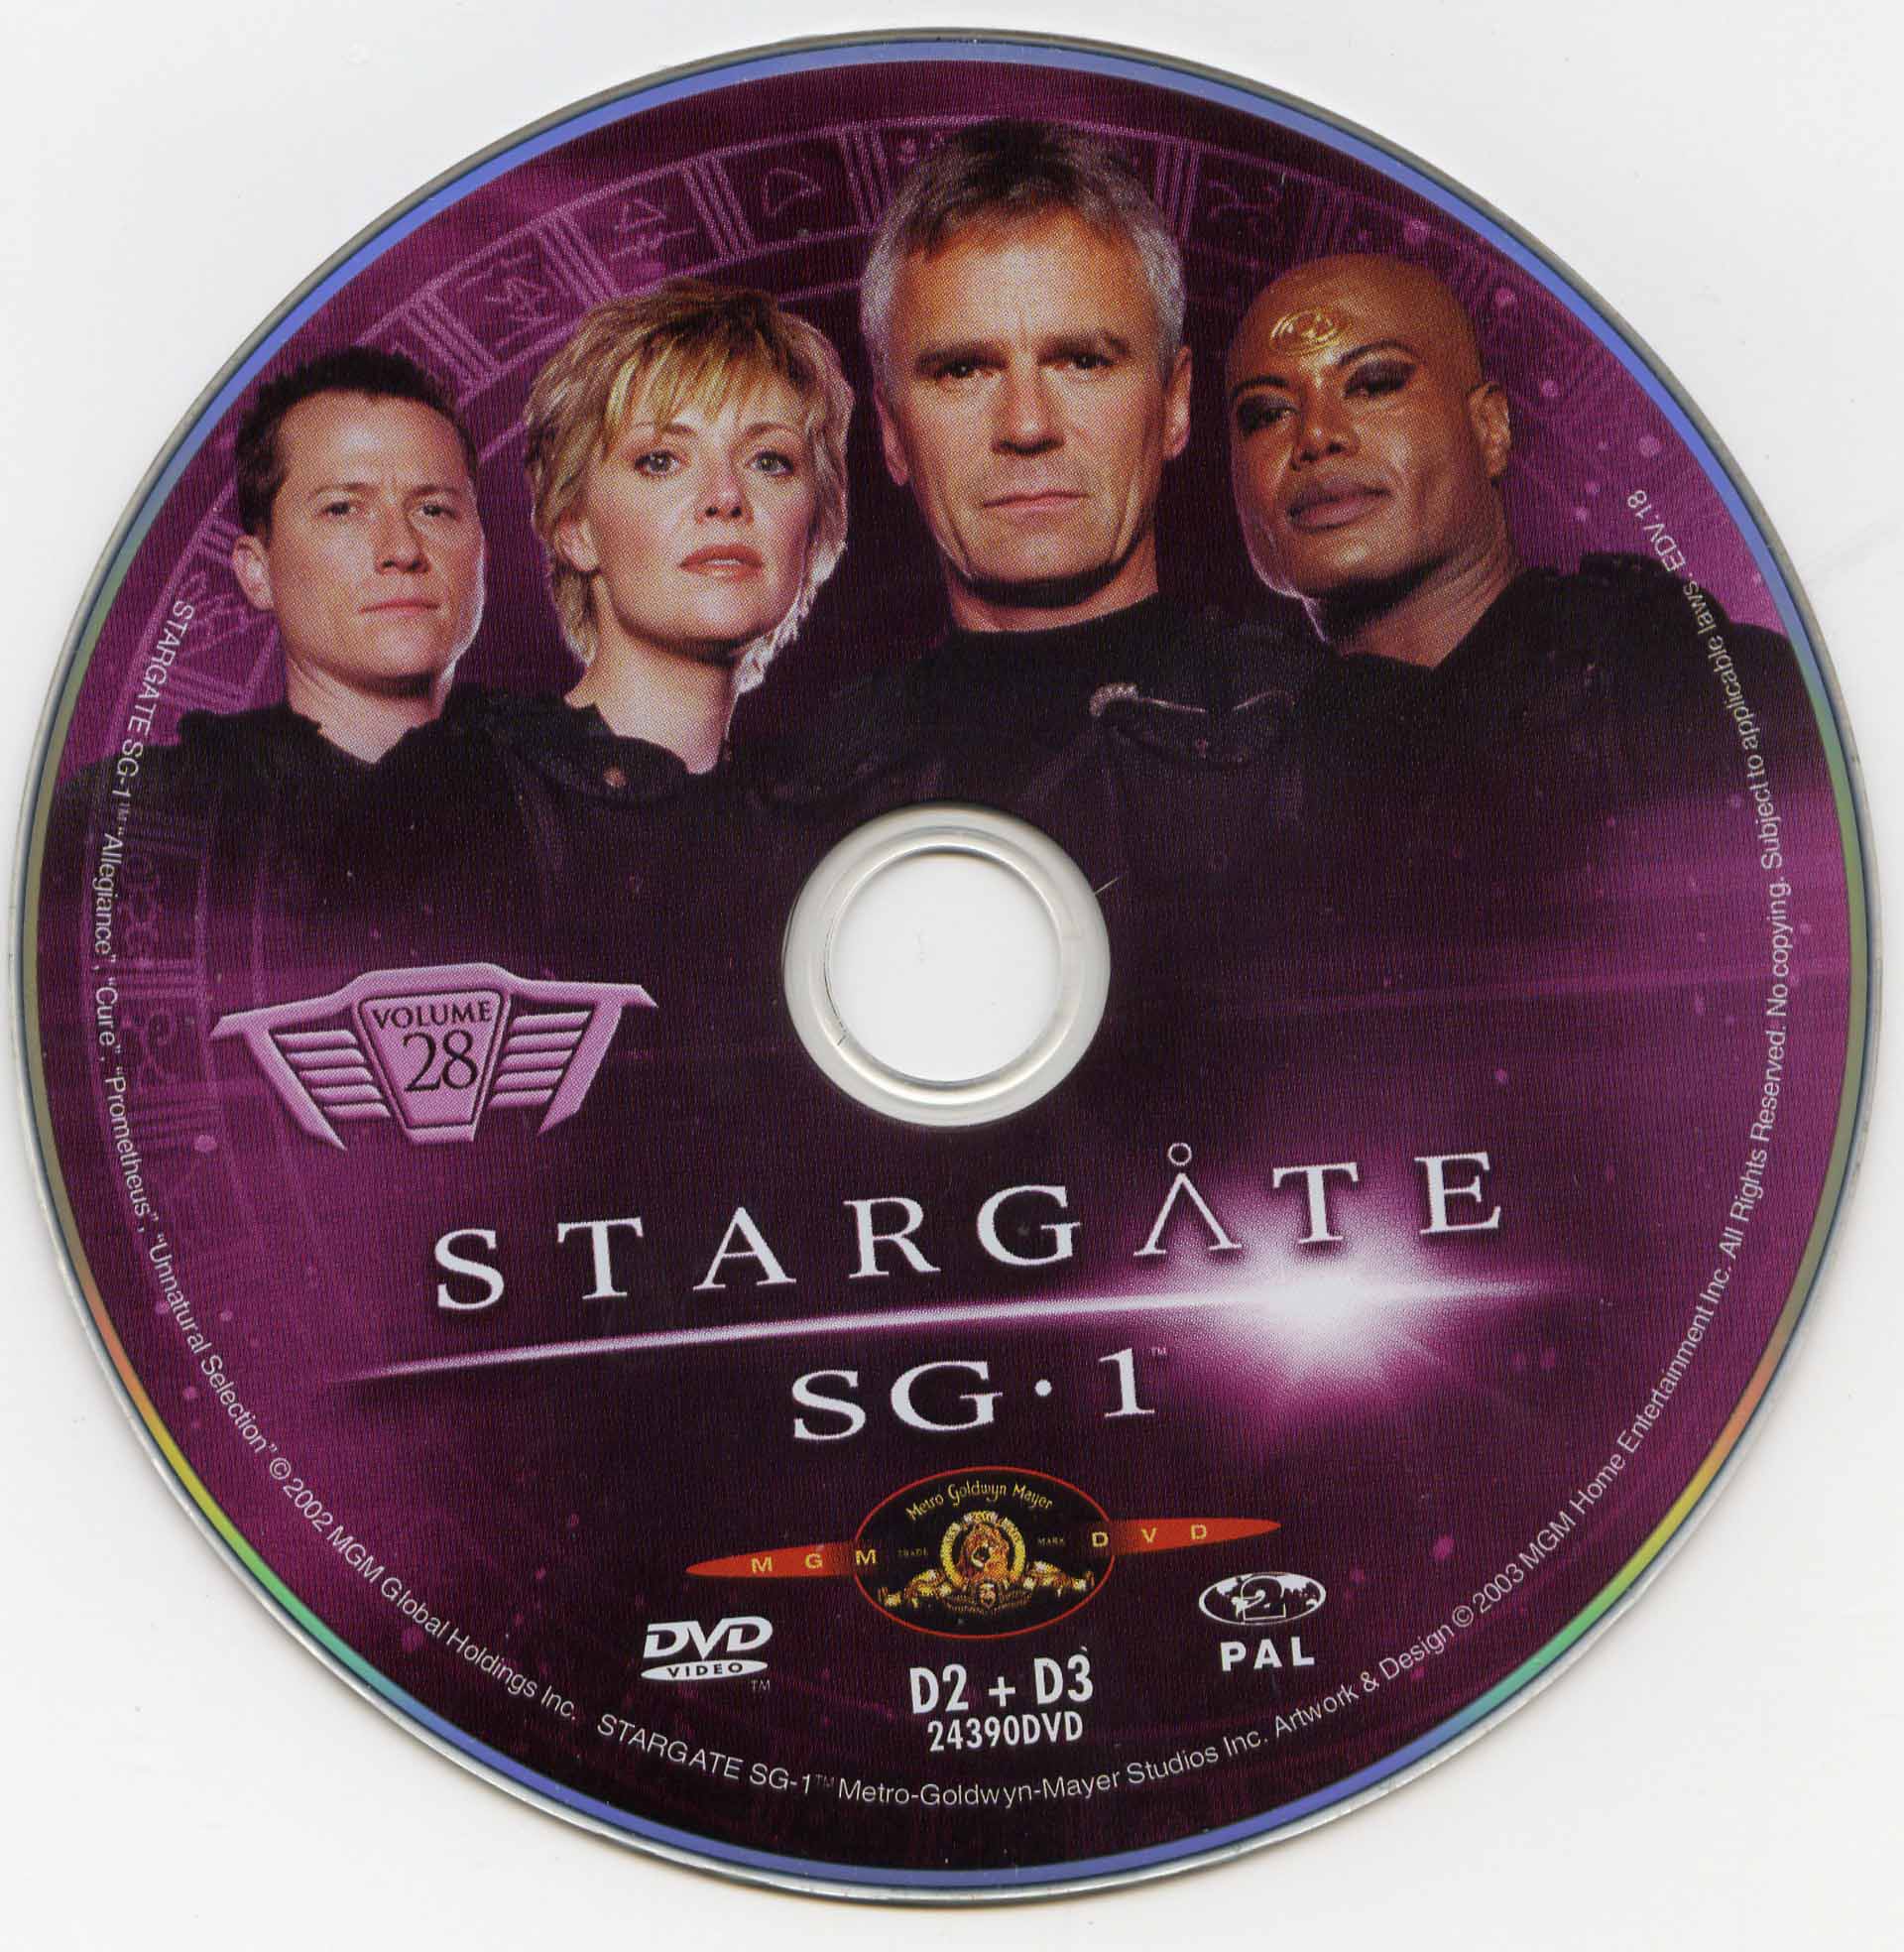 Stargate SG1 vol 28